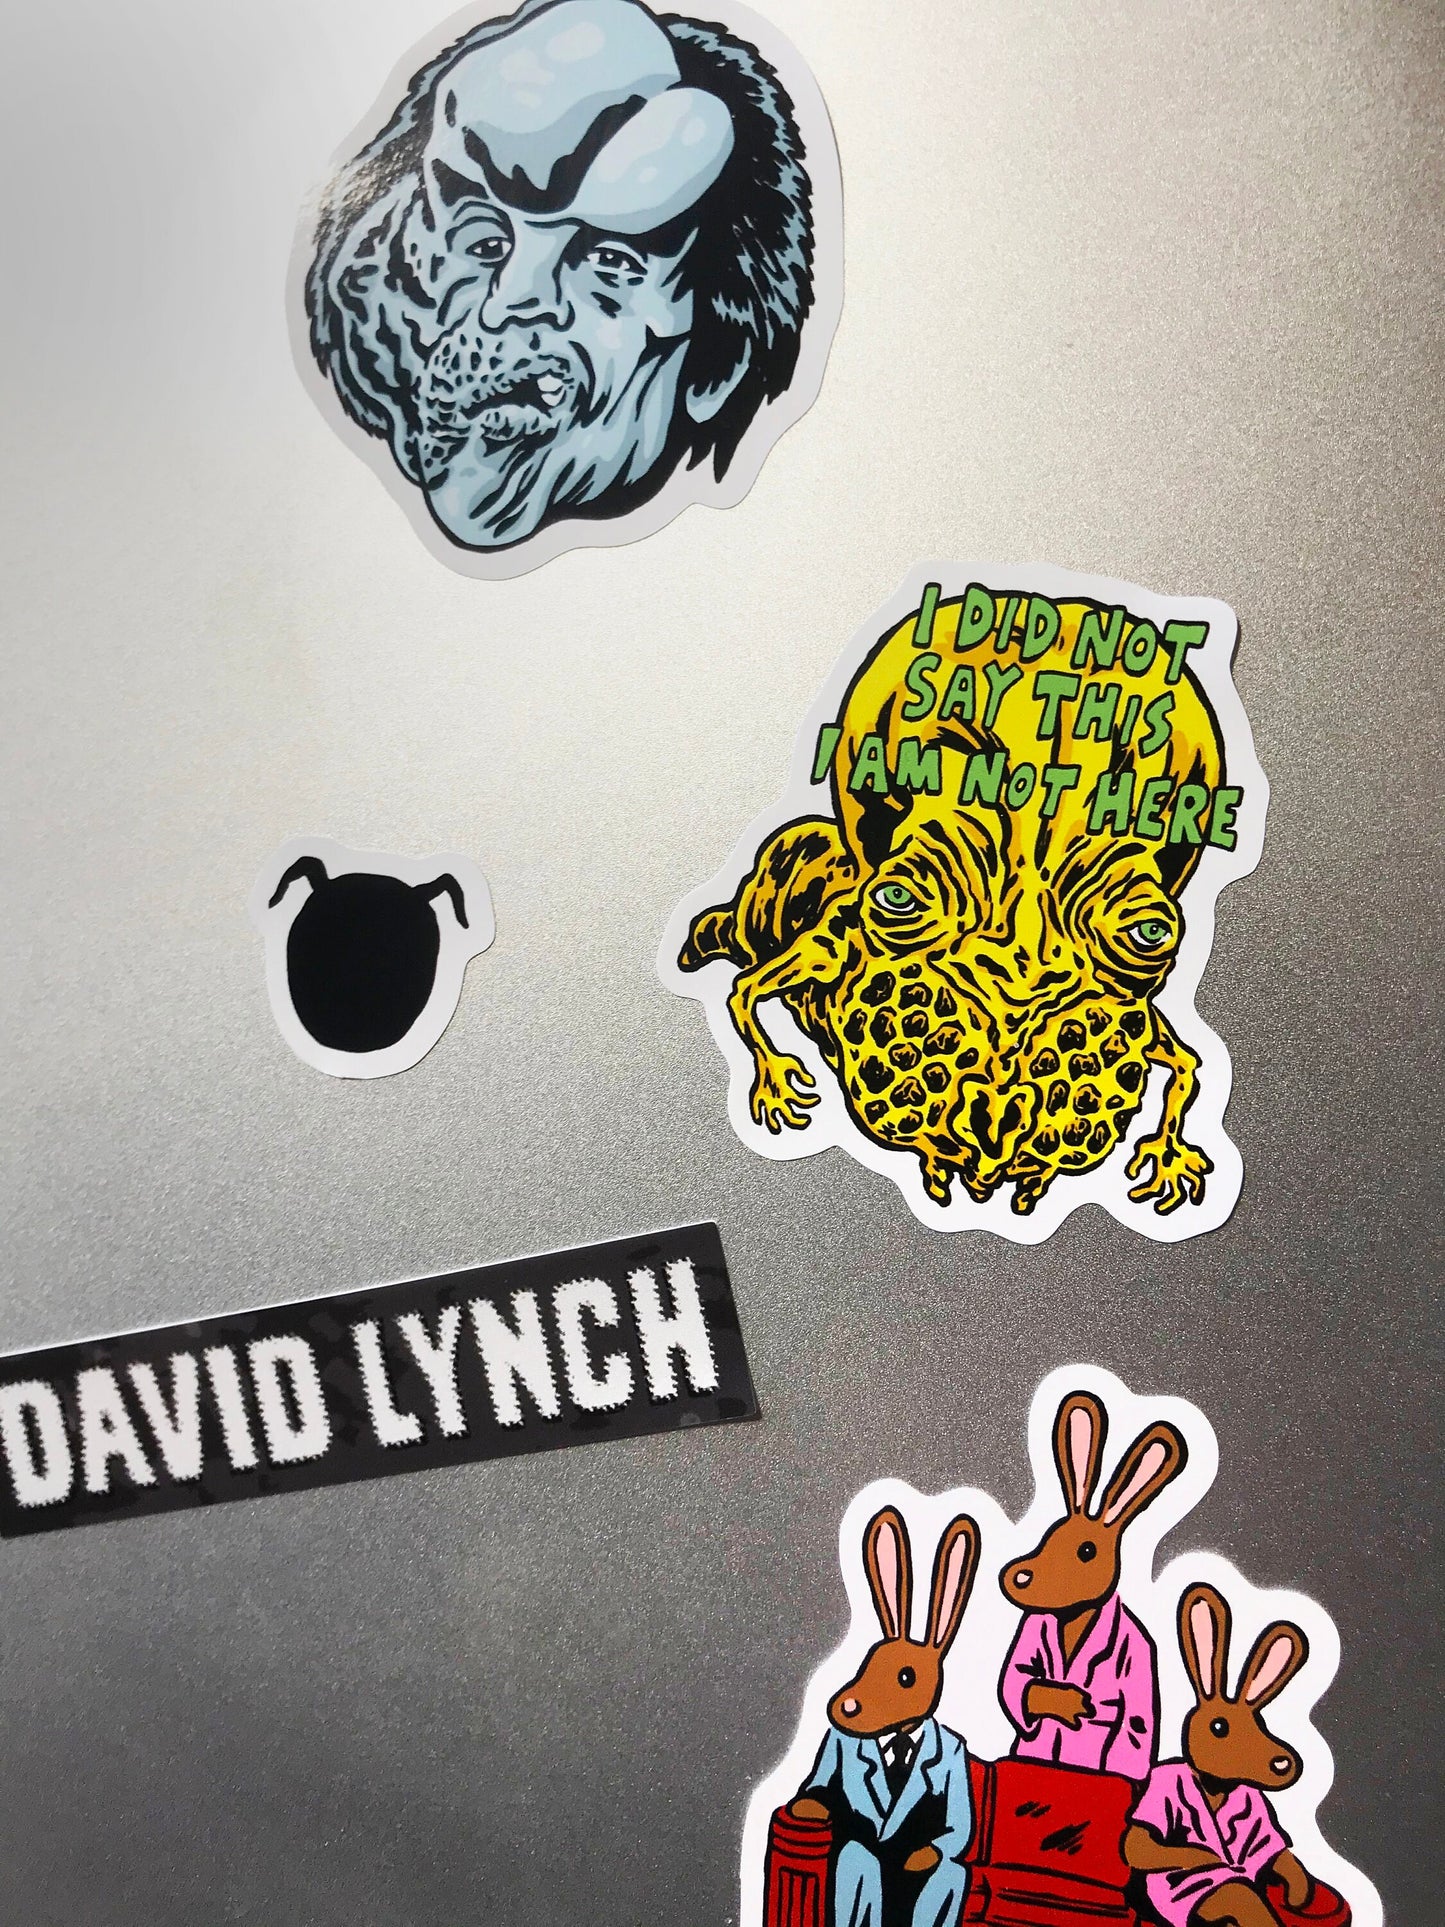 DAVID LYNCH Sticker Sheet